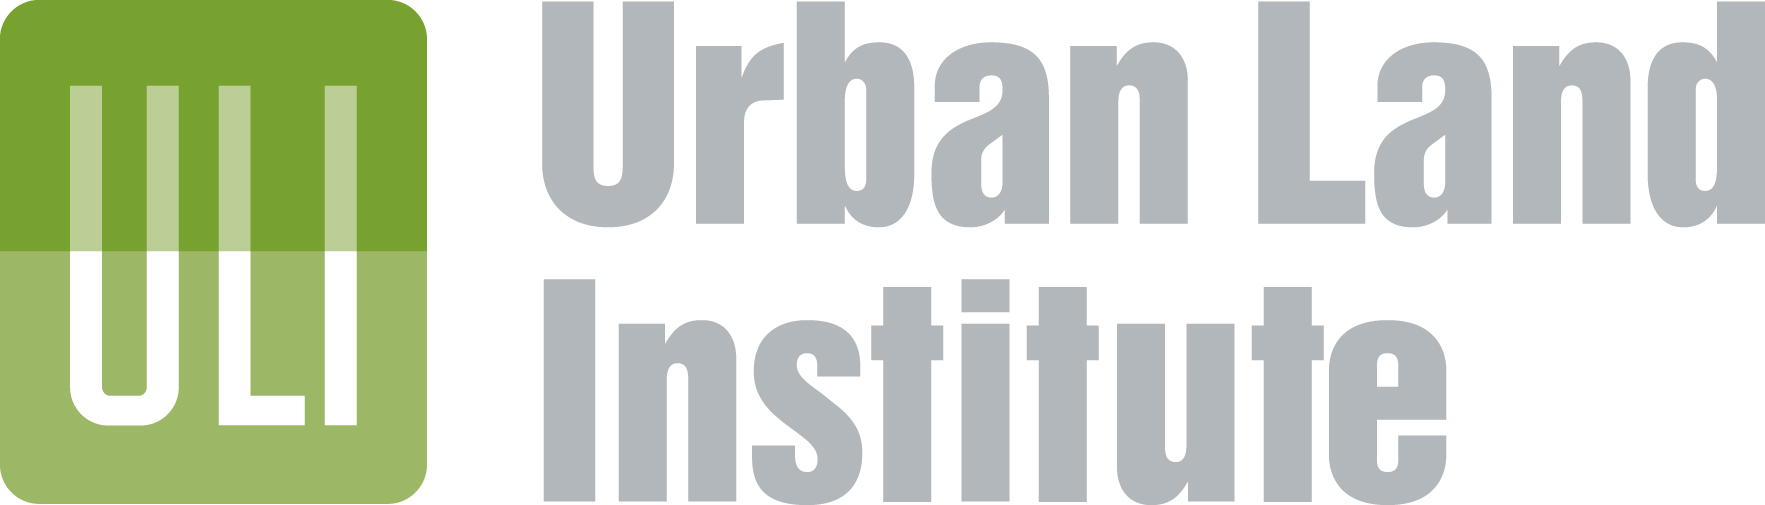 urban land institute logo